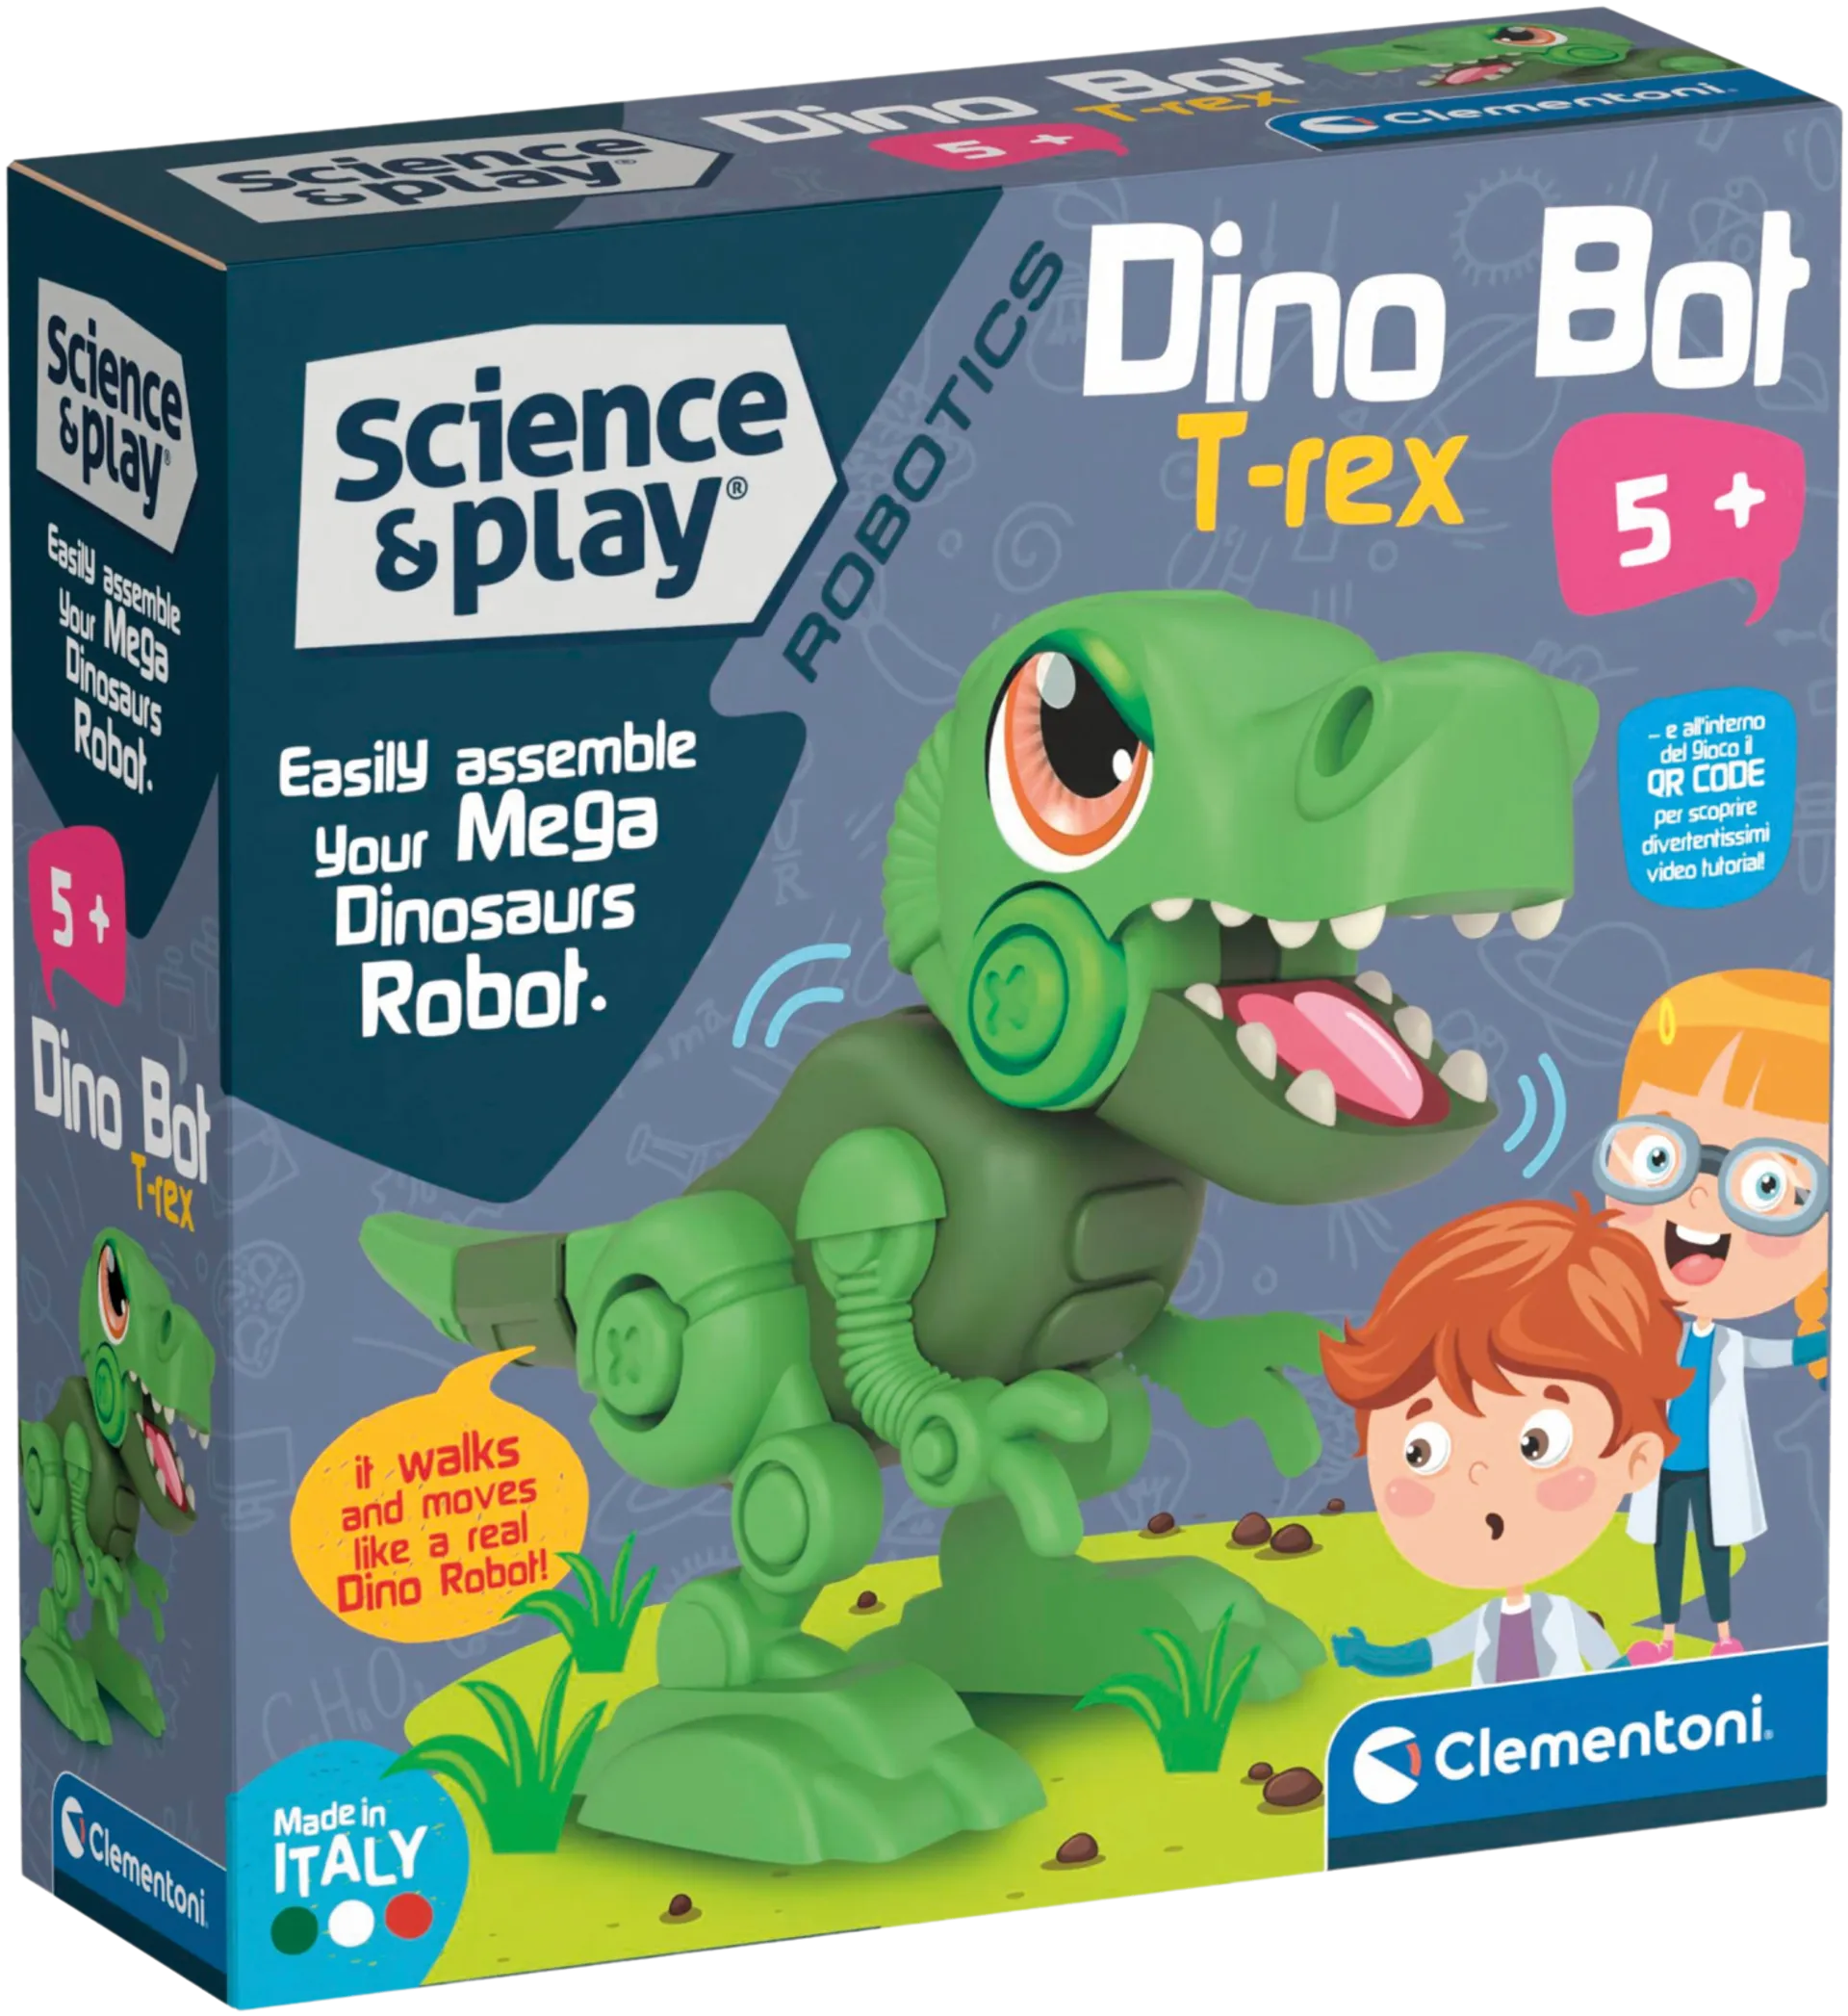 Clementoni Dinobot T-Rex - 1